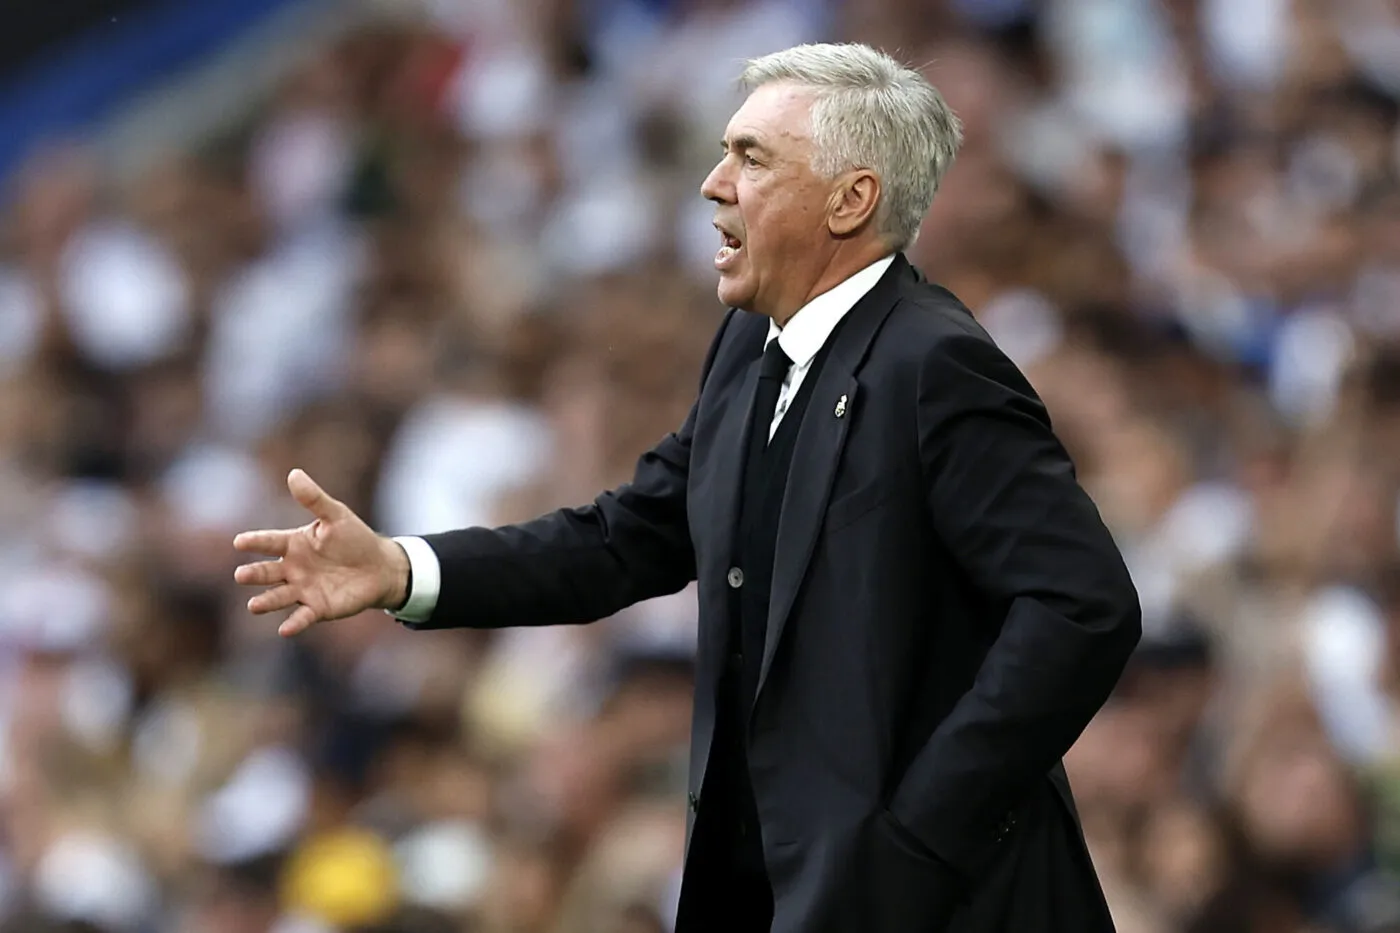 L'AFP annonce qu'Ancelotti va bien prendre les rênes de la sélection brésilienne